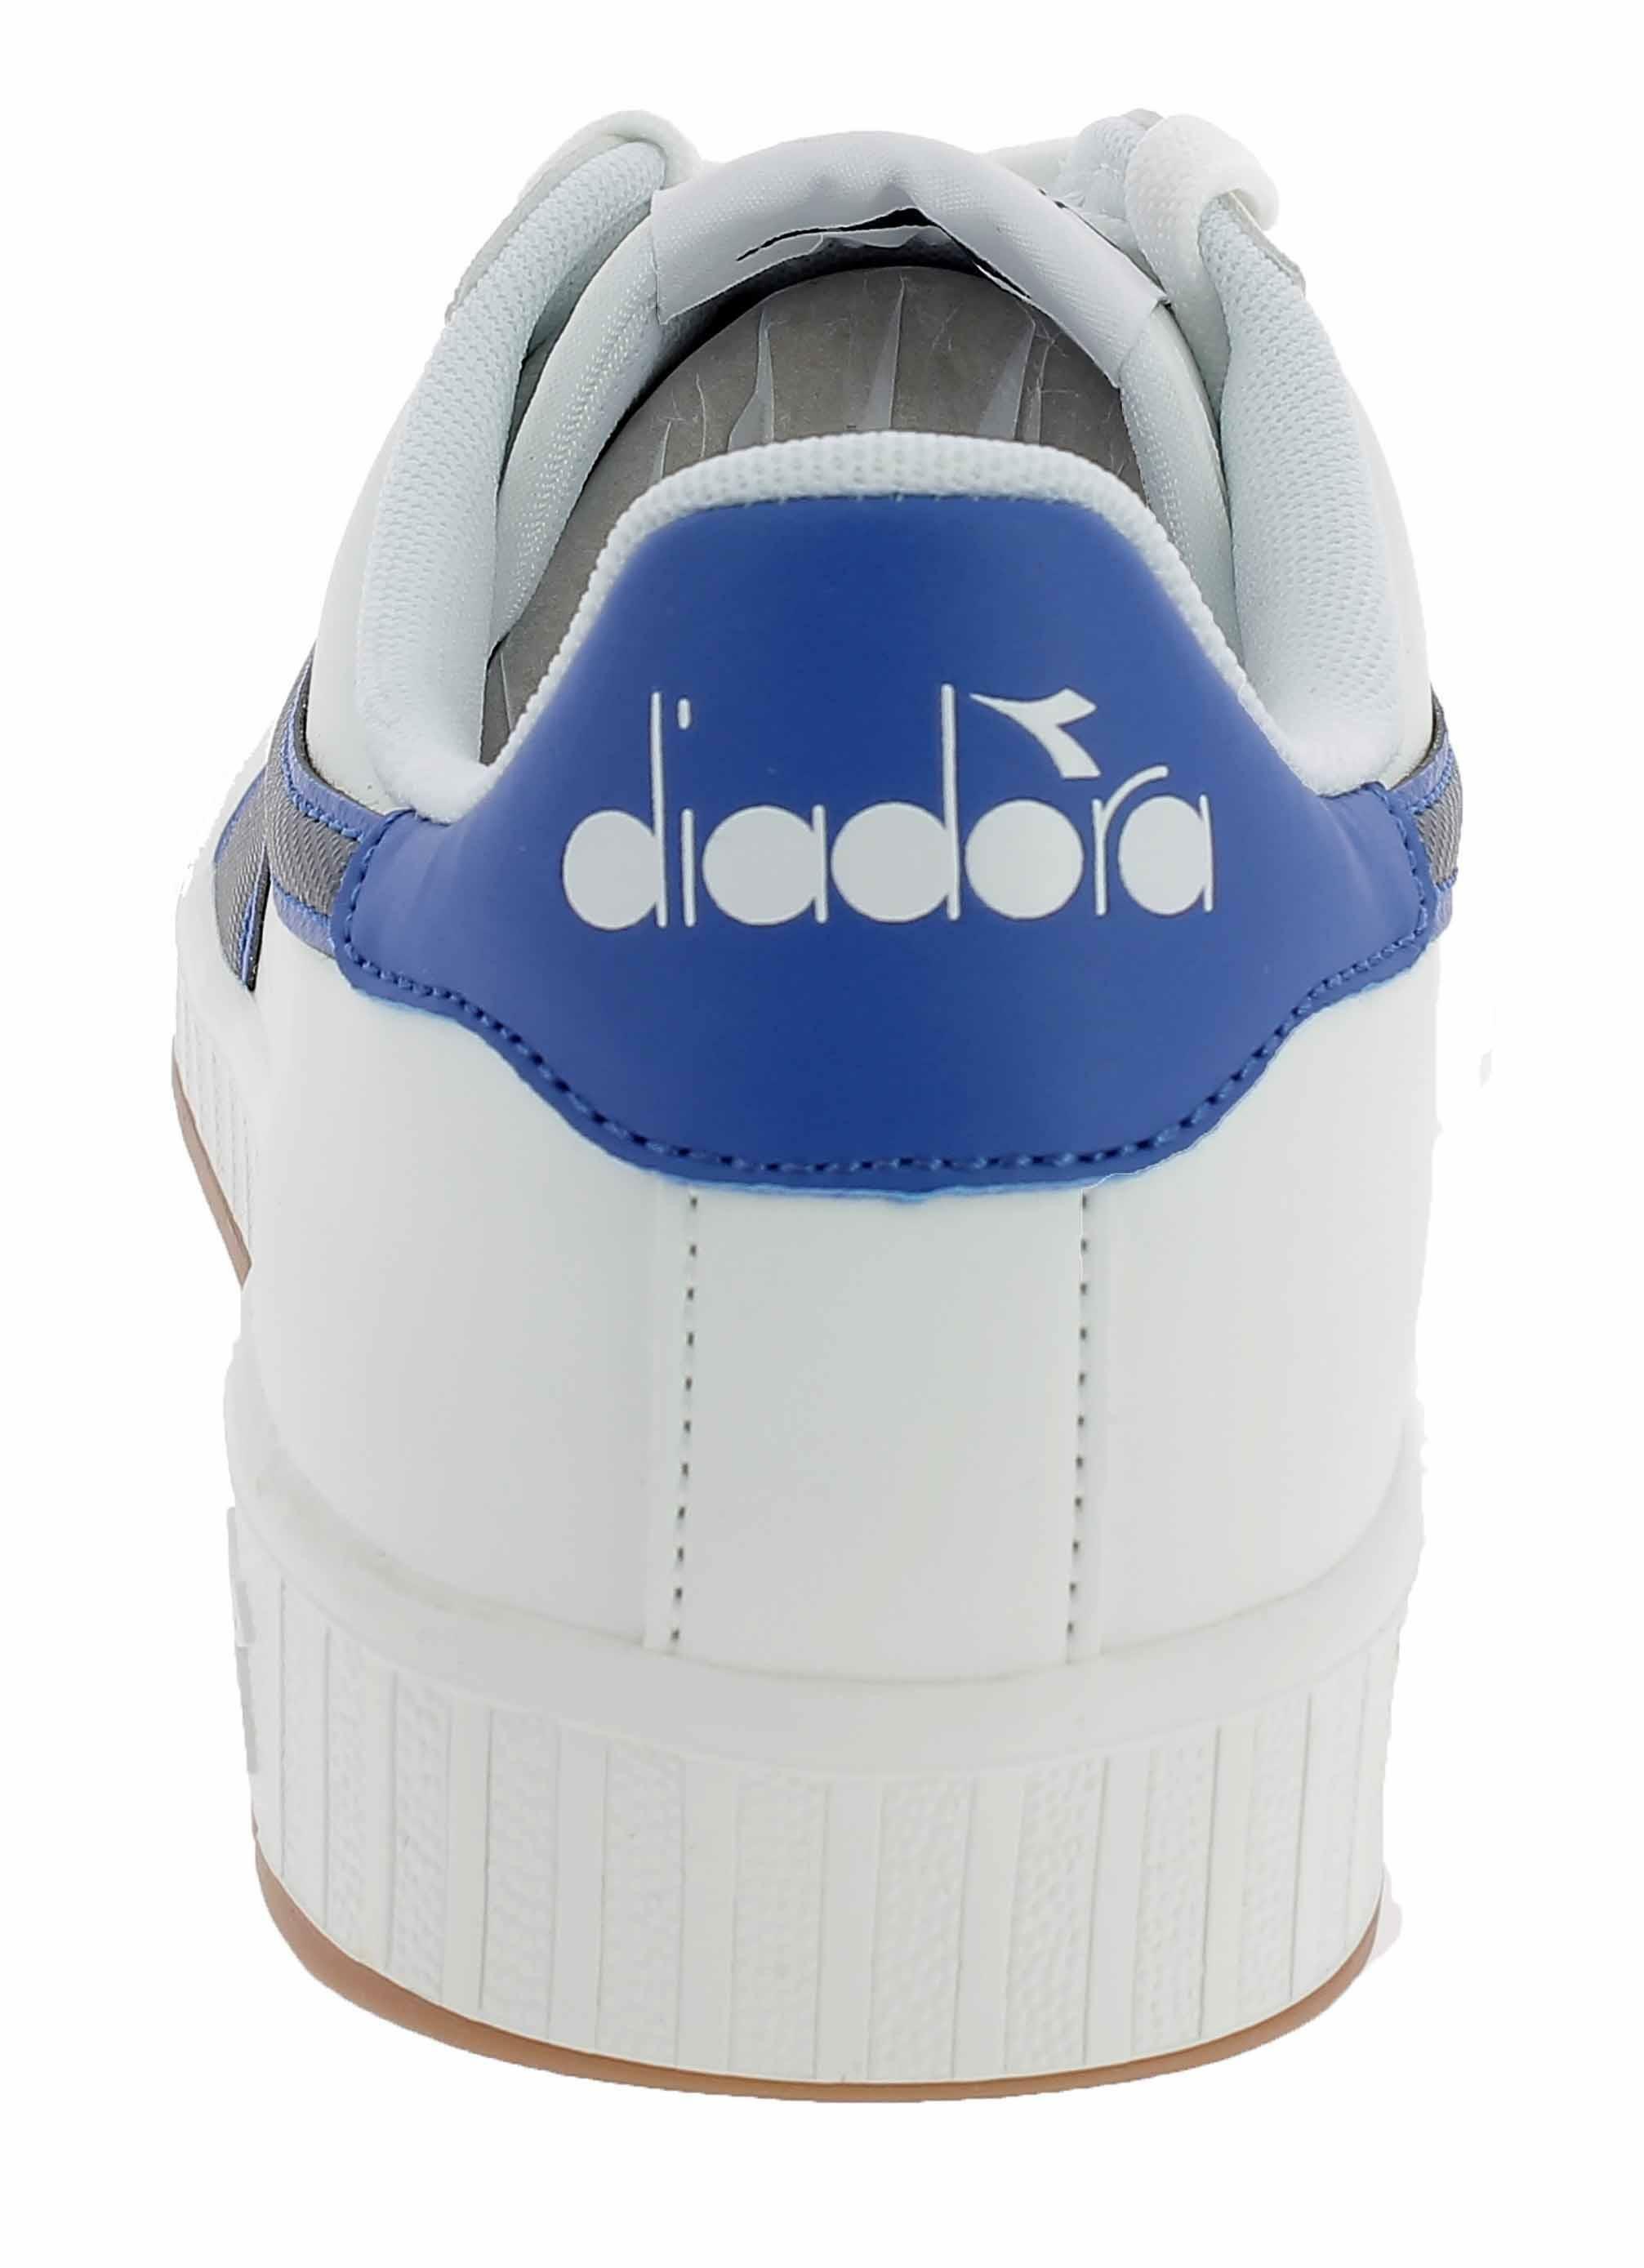 diadora diadora game p scarpe sportive bianche 160281c3281